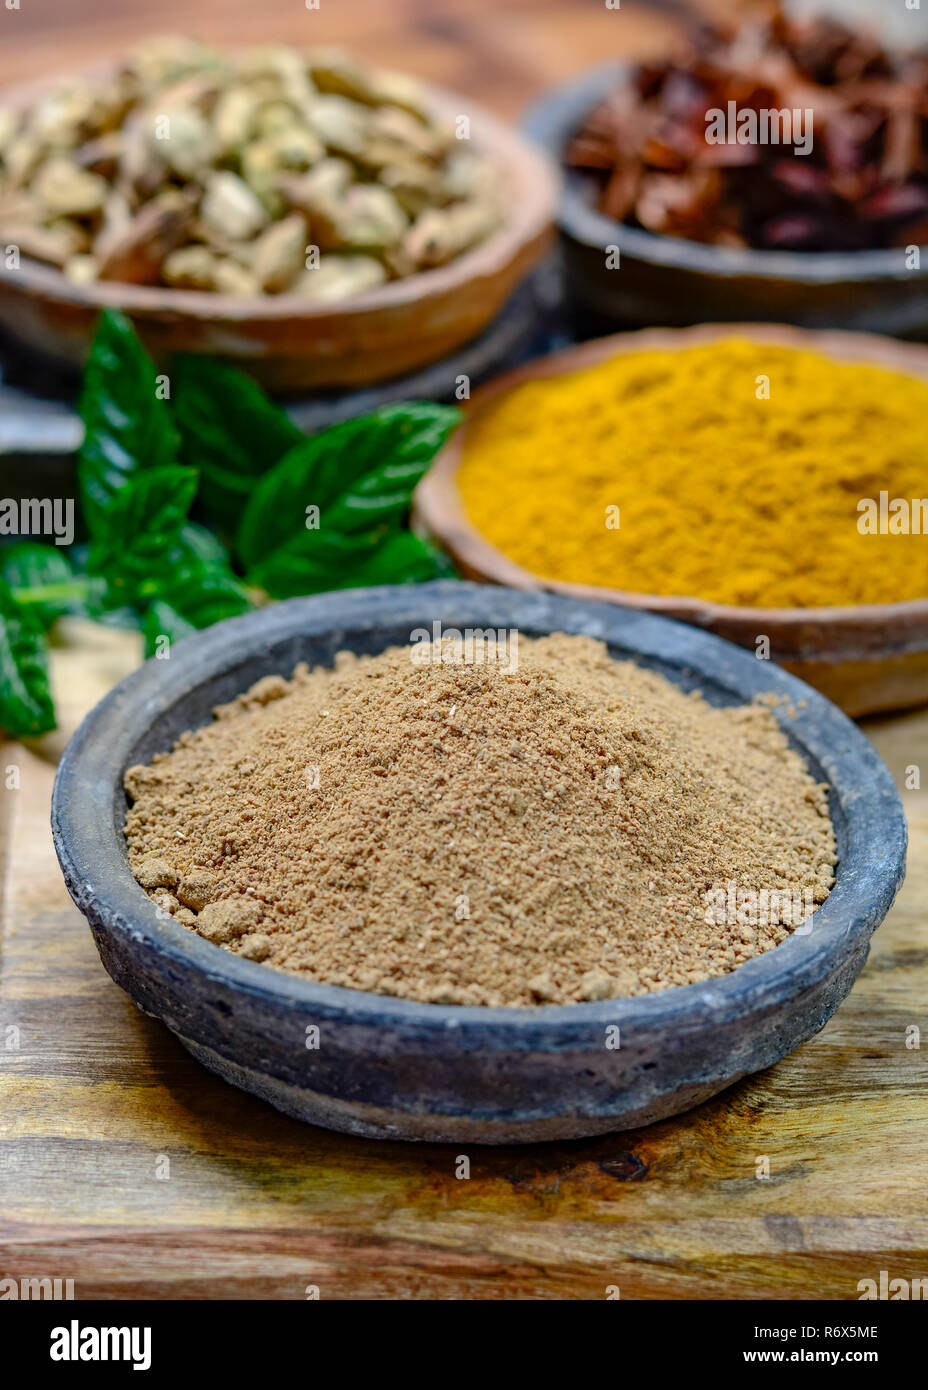 Amchoor ou aamchur, la mangue en poudre, poudre d'épices fruité à base de mangues vertes non mûres séchées en Inde, utilisé pour aromatiser les aliments close-up Banque D'Images